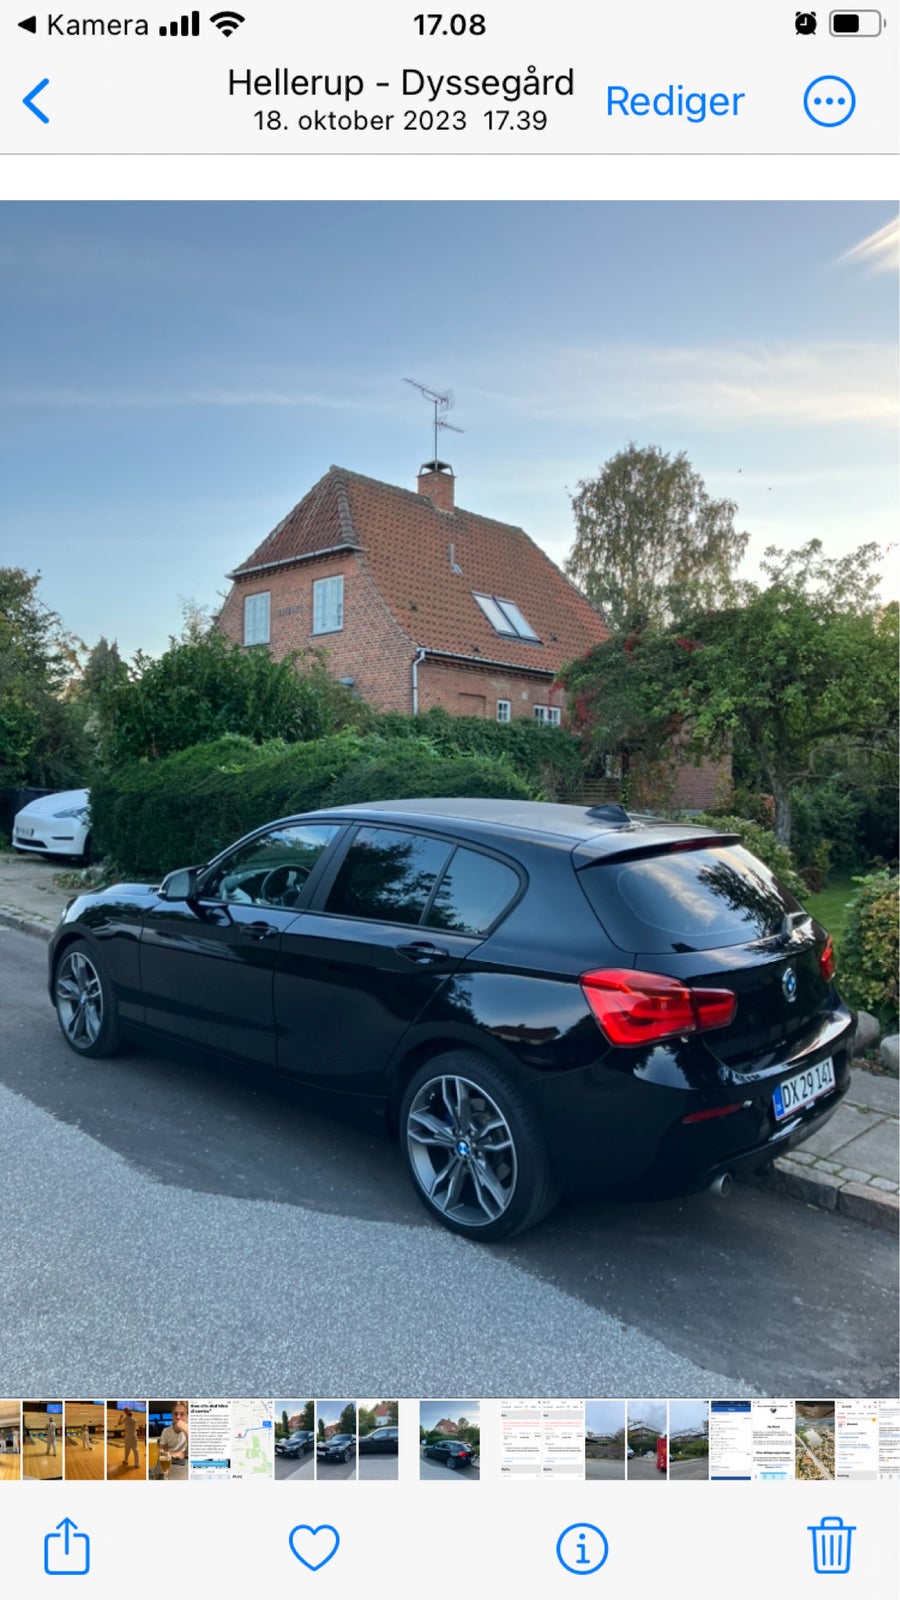 BMW 118d, 2,0 Sport Line, Diesel